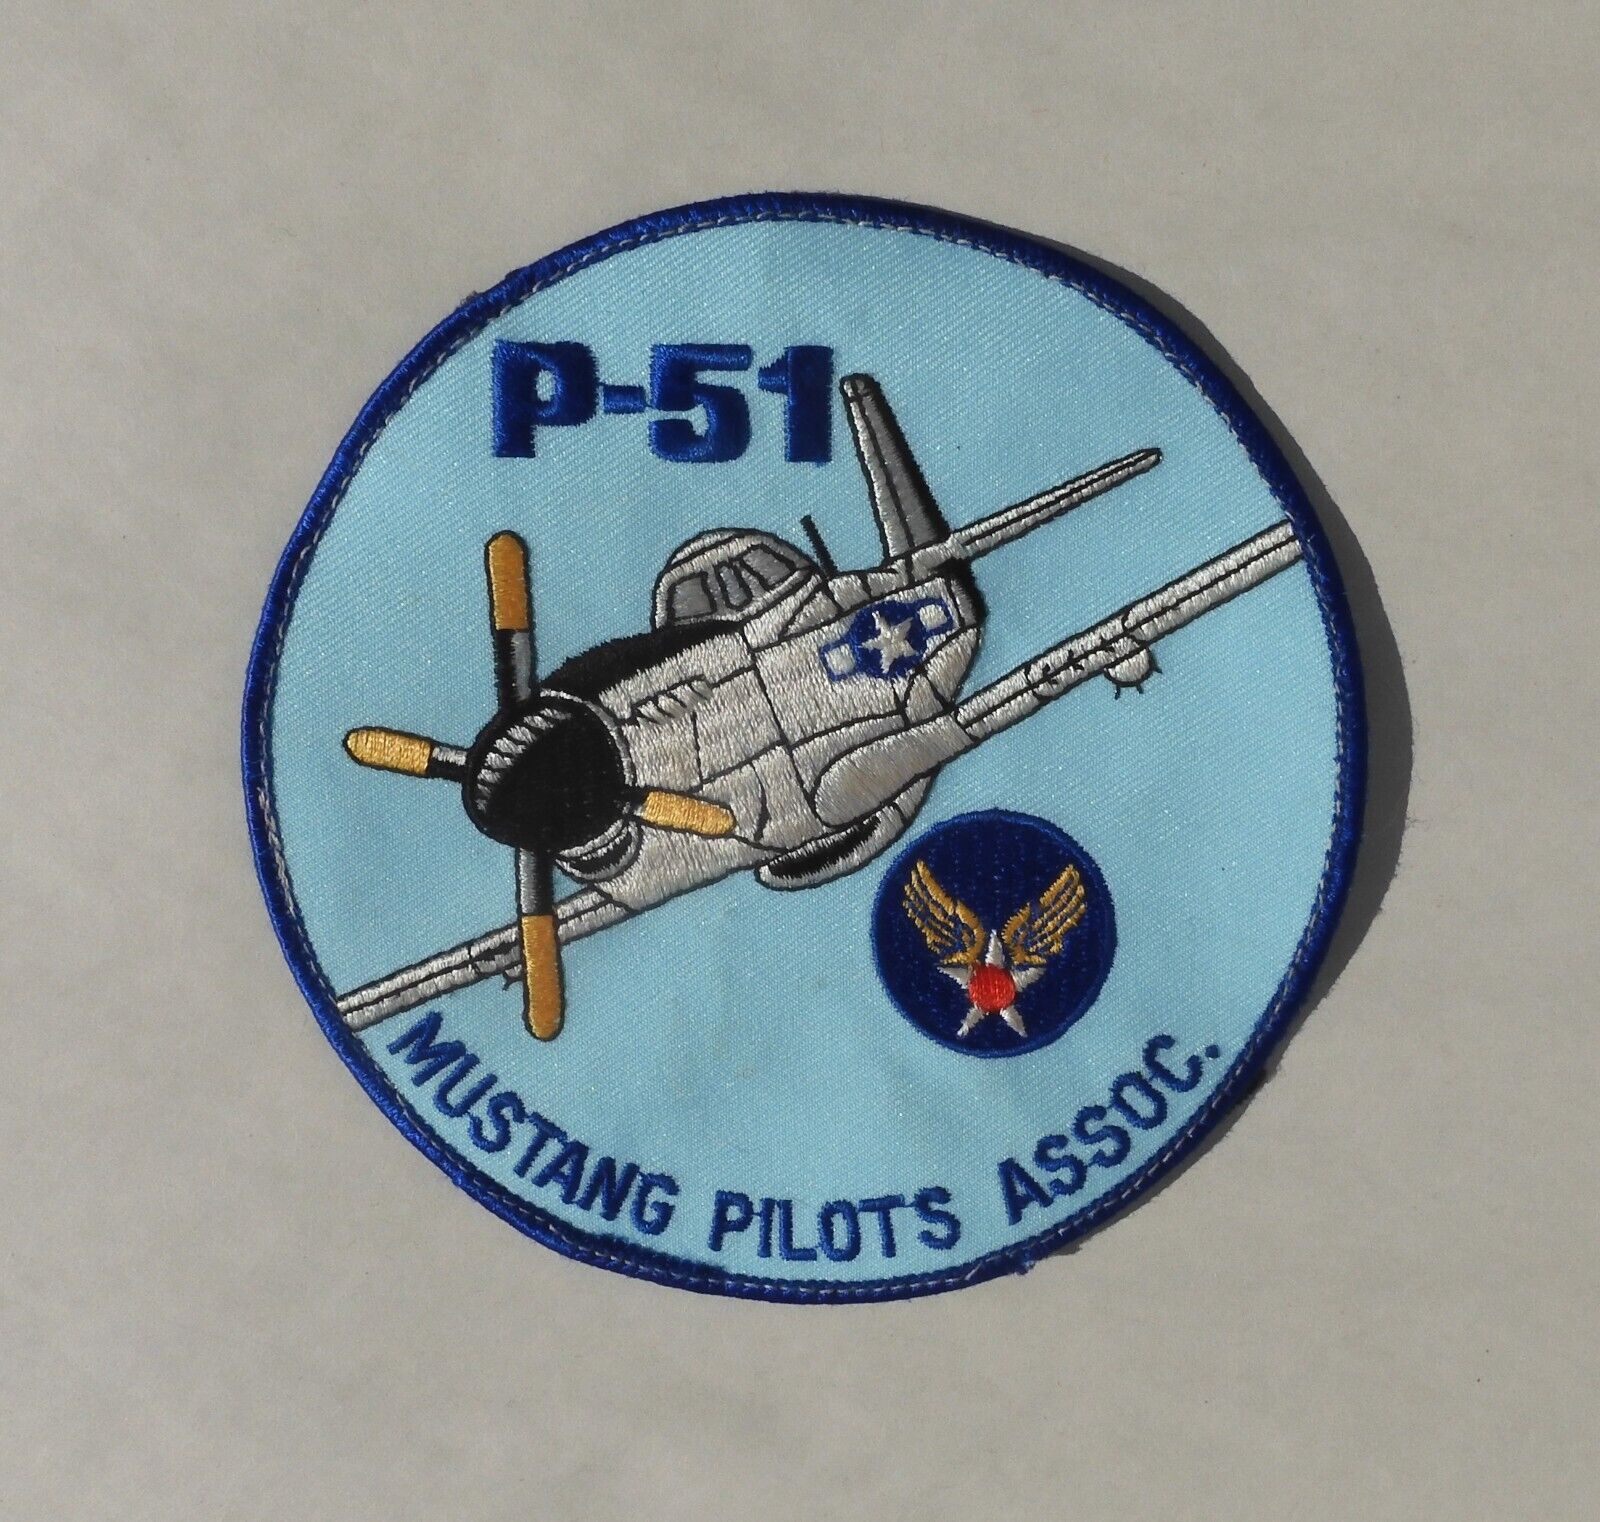 Vintage P-51 MUSTANG PILOTS ASSOC. Large 5” Patch